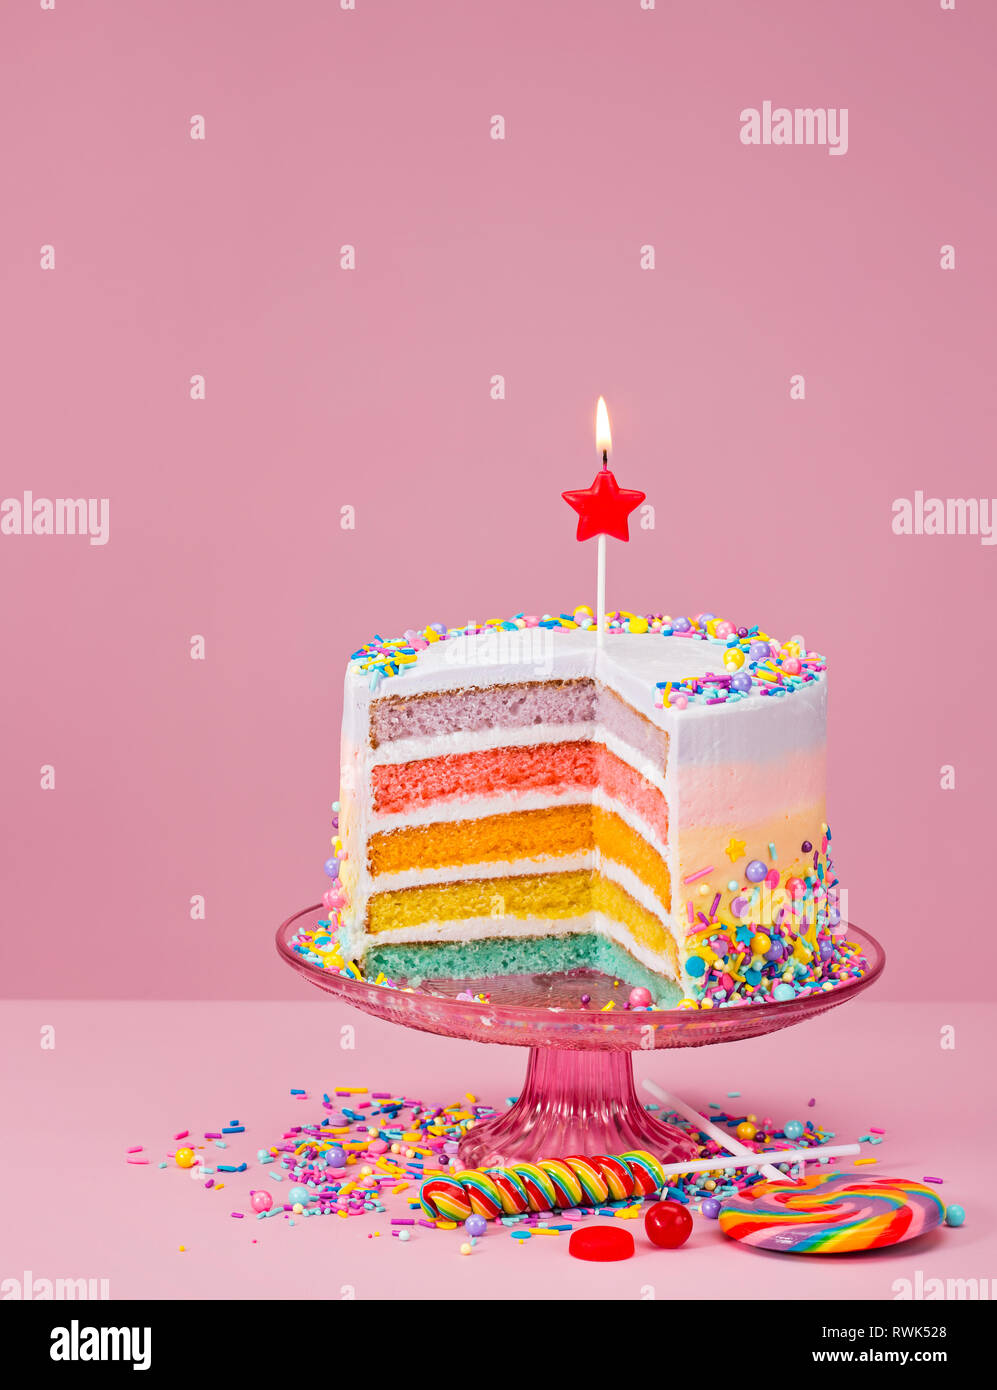 Bunte 2 In 1 Geburtstag Kuchen Mit Streuseln Und Sussigkeiten Uber Einen Rosa Hintergrund Stockfotografie Alamy